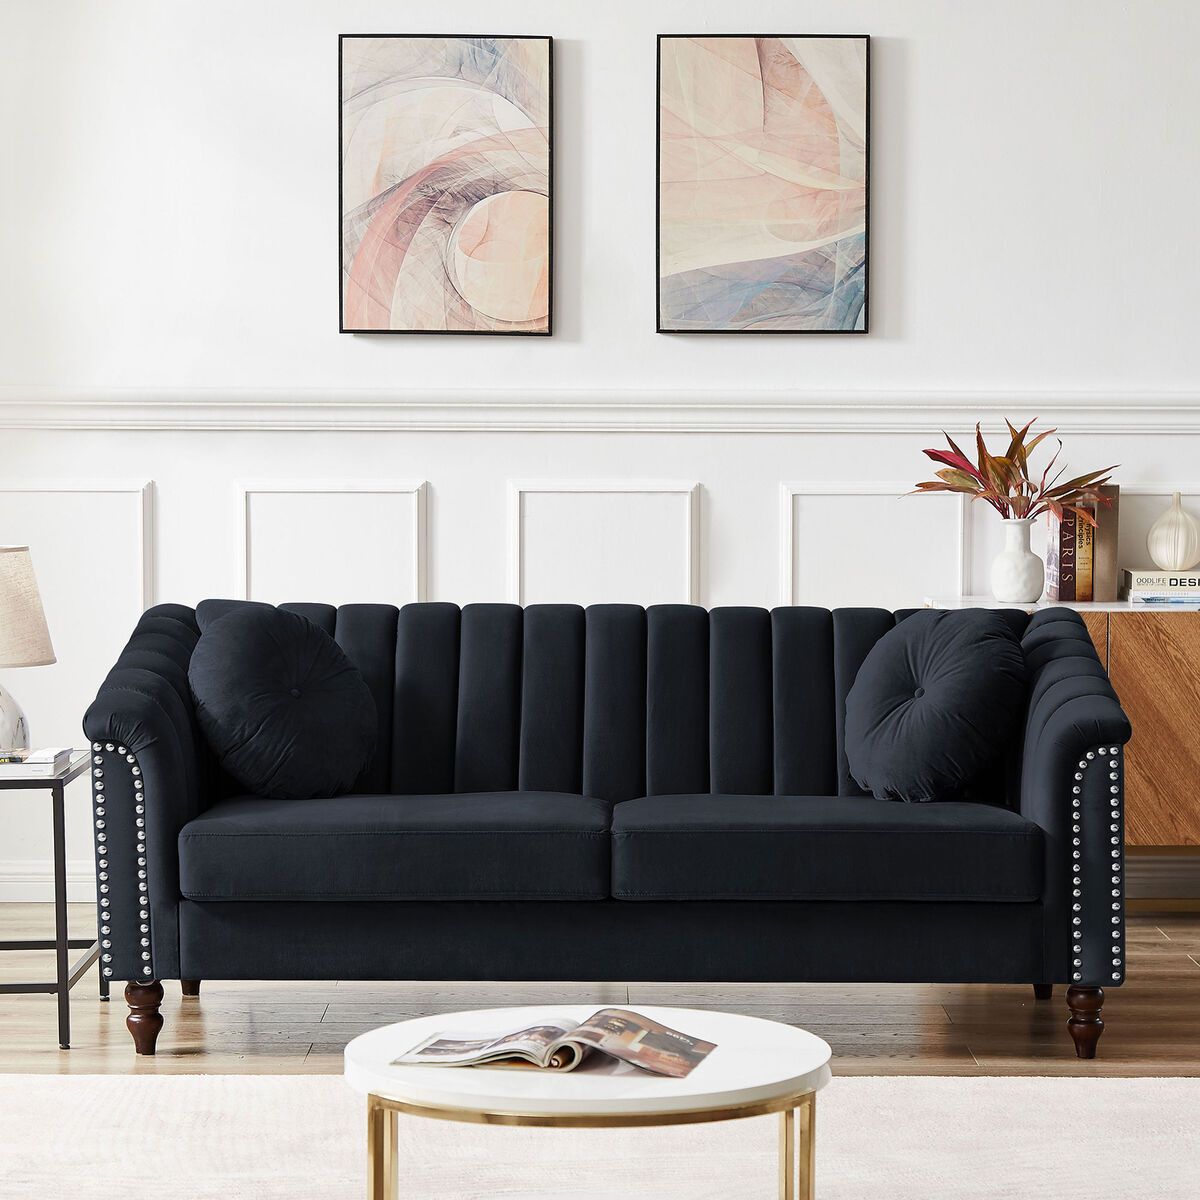 3 Seater Sofa Couch Velvet Upholstered Living Room W/2 Pillows Wooden Legs  Black | Ebay With Regard To Black Velvet 2 Seater Sofa Beds (Photo 15 of 15)